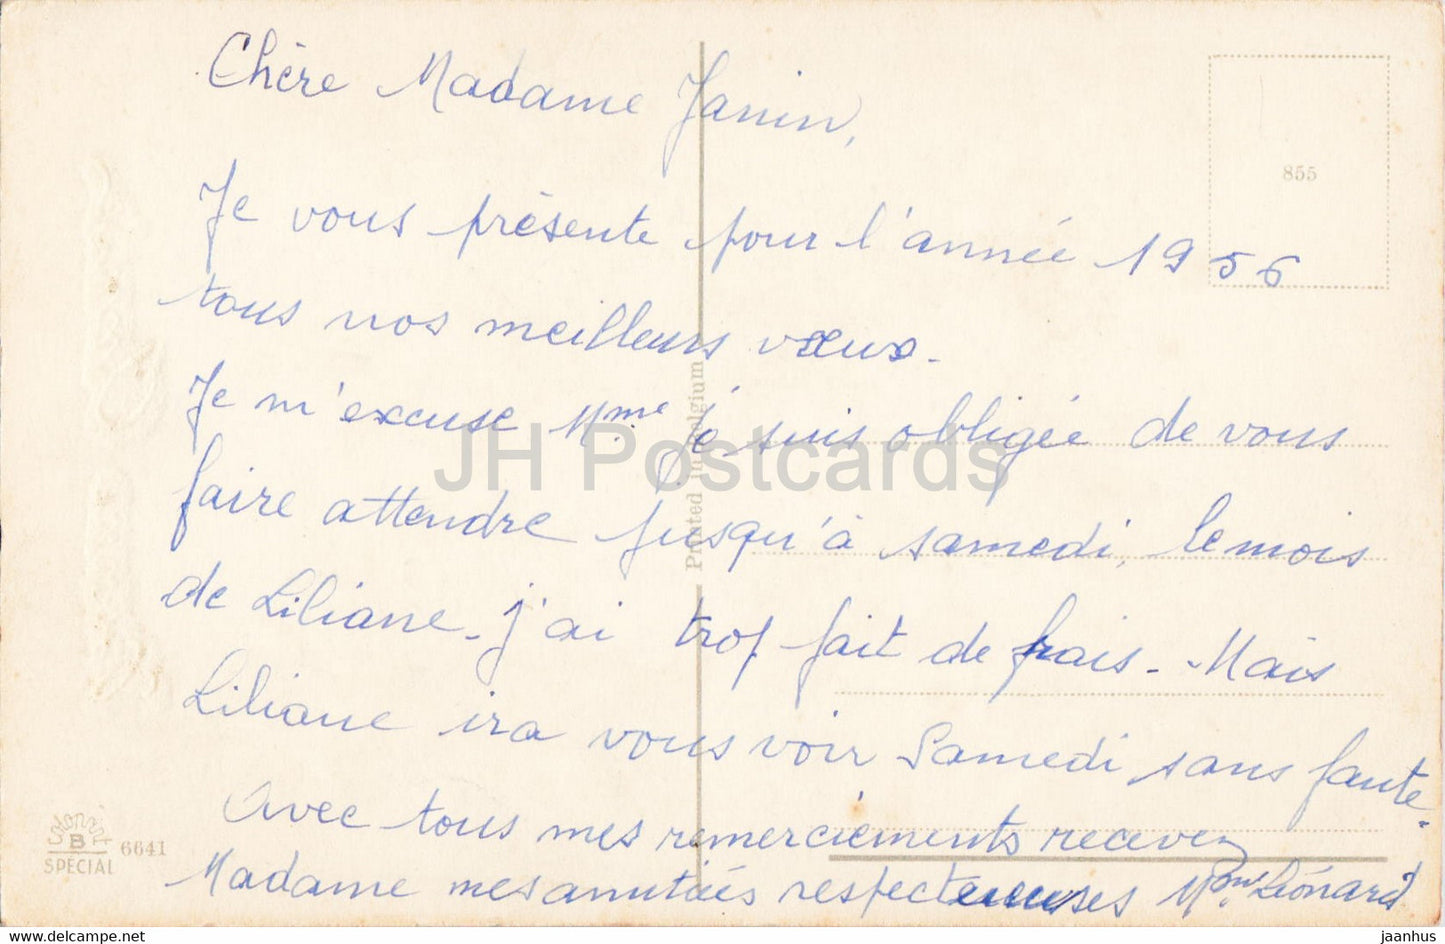 Geburtstagsgrußkarte – Bonne Annee – Blumen – 6641 – Illustration – alte Postkarte – 1956 – Frankreich – gebraucht